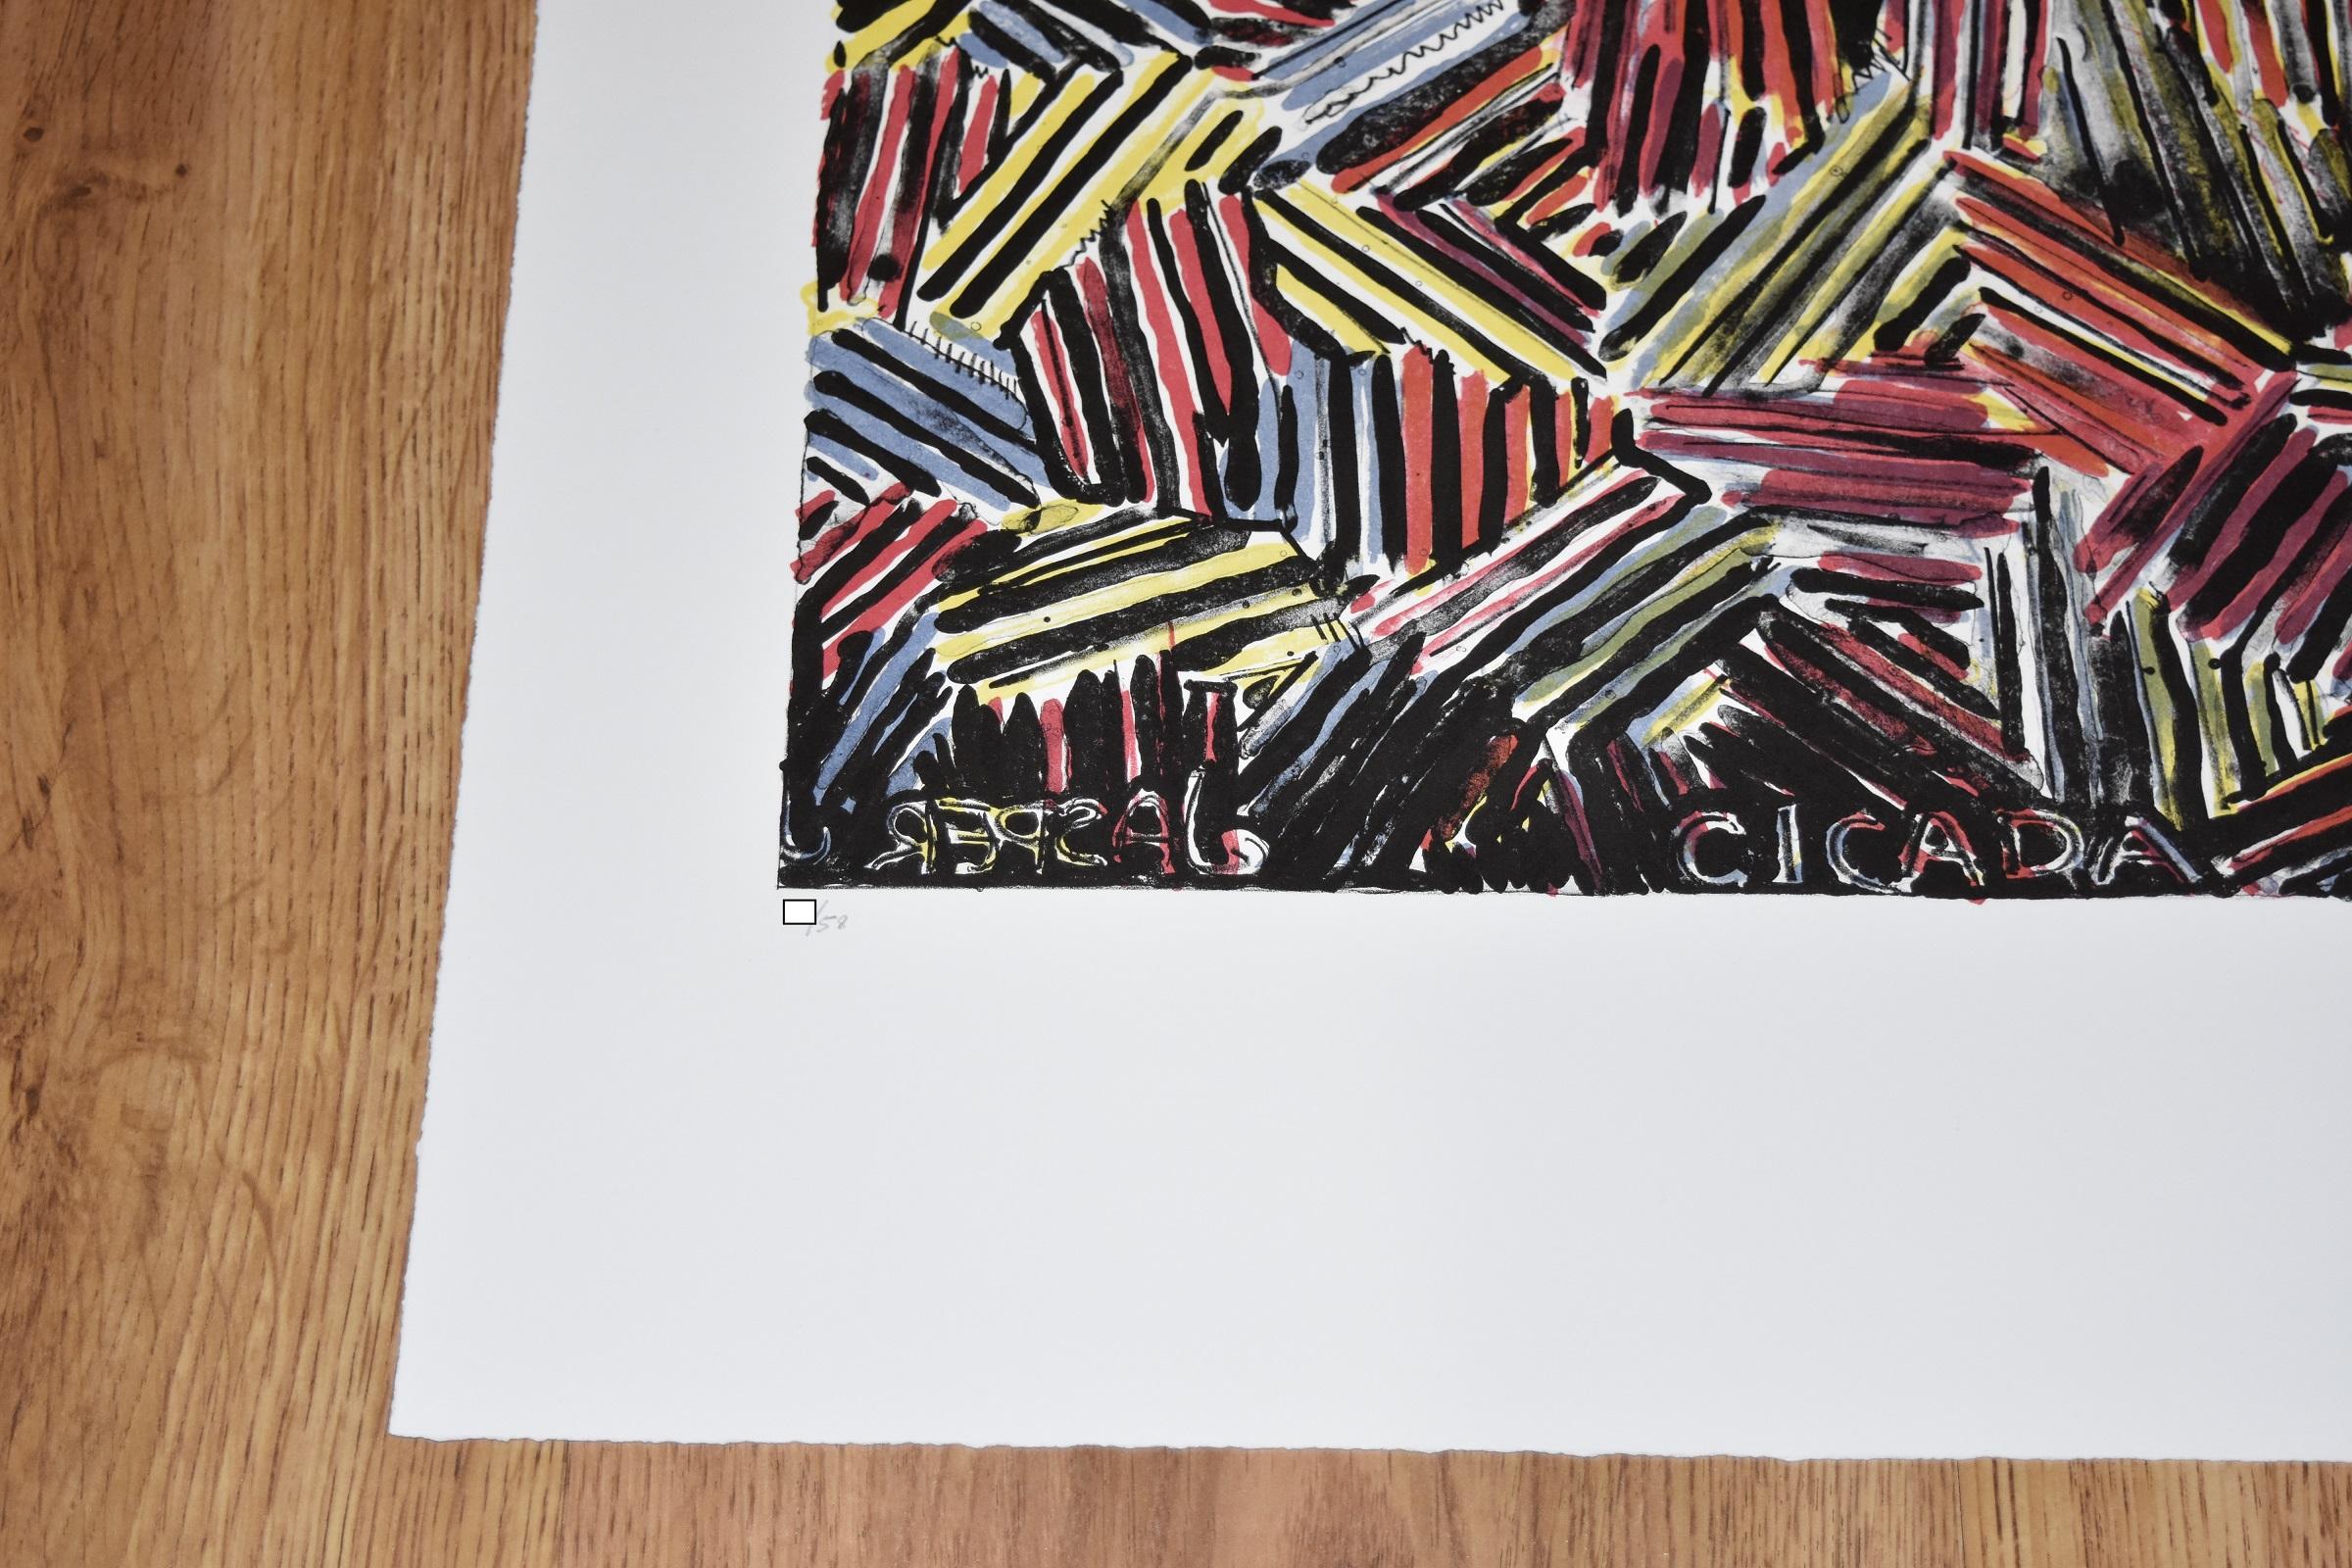 Cette œuvre de Johns se compose de bandes multicolores ressemblant à des rubans.  Cette Lithographie originale en couleurs, sur papier Artistics 88 est garantie authentique et est signée à la main par l'artiste.

Artiste :  Jasper Johns
Titre : 